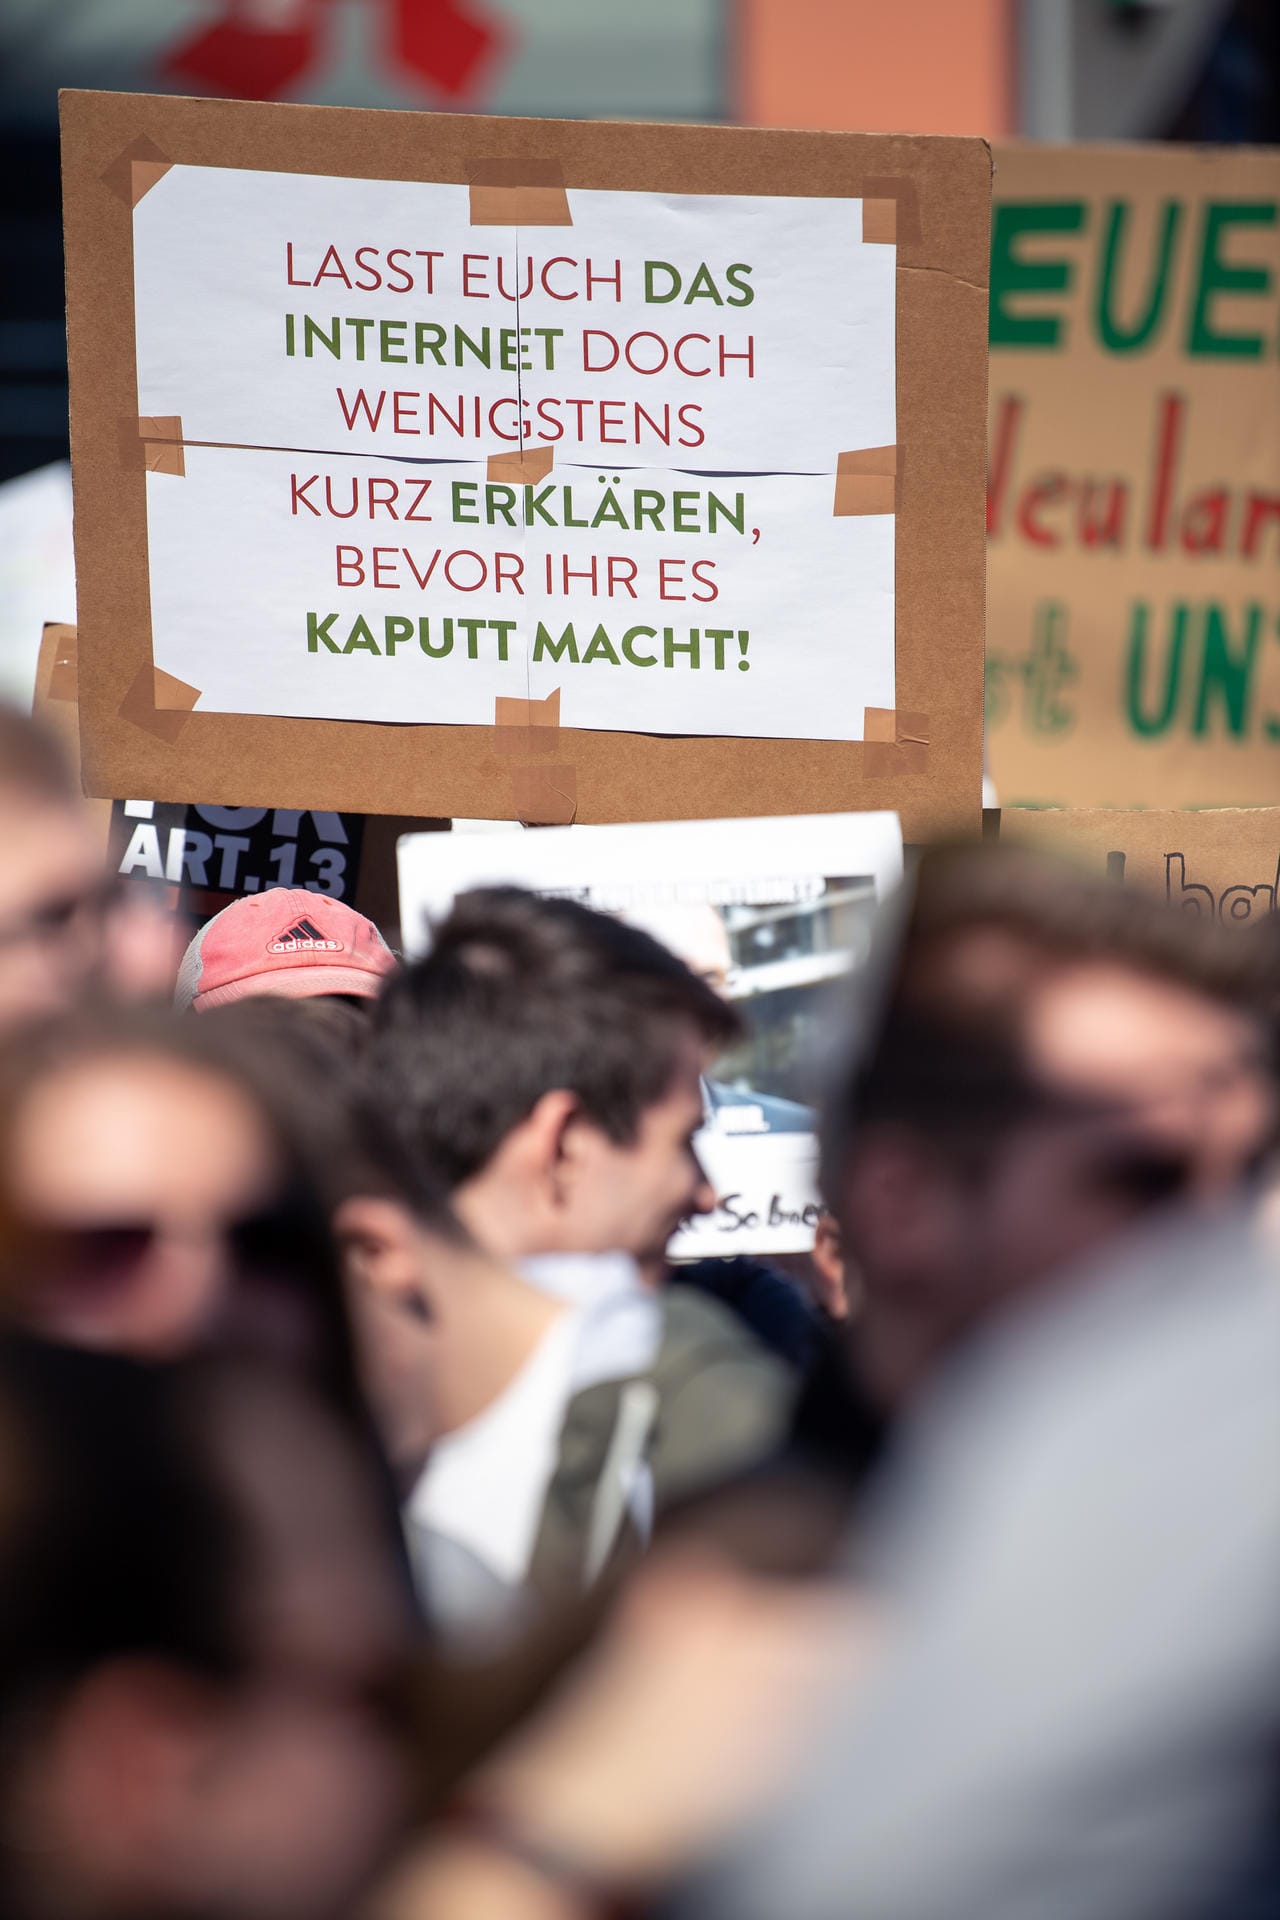 In Stuttgart hält eine Teilnehmerin hält ein Schild hoch, auf dem steht: "Lasst Euch das Internet doch wenigstens kurz erklären, bevor ihr es kaputt macht!".